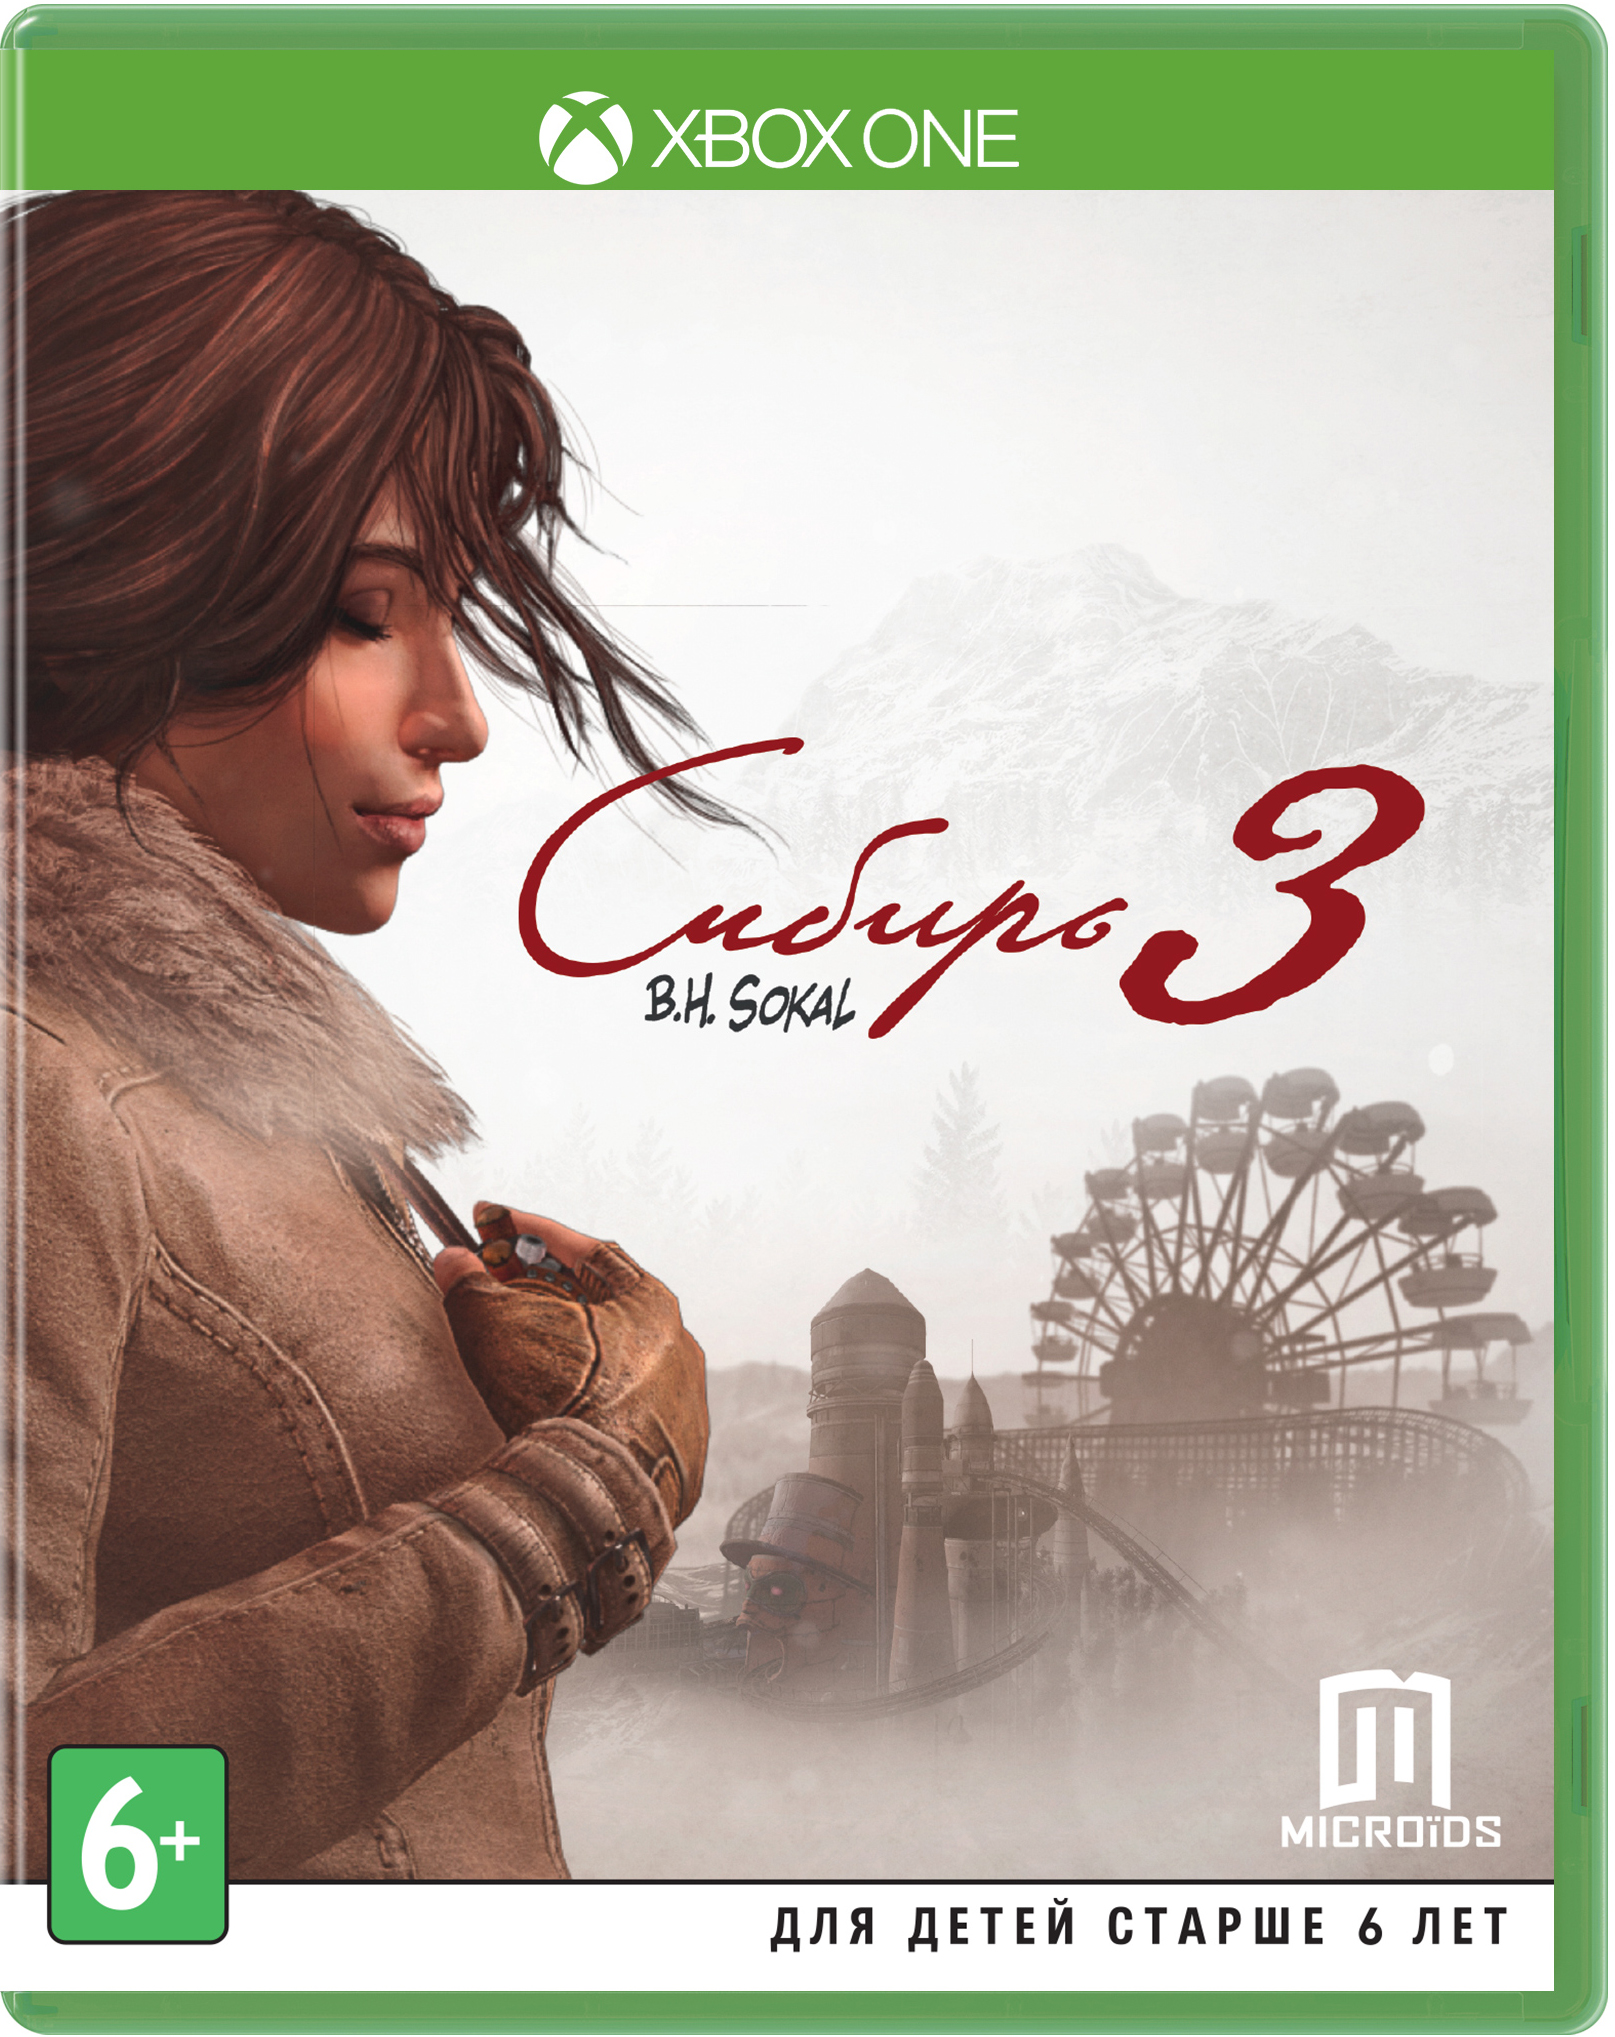 Сибирь 3 (XboxOne) (GameReplay)